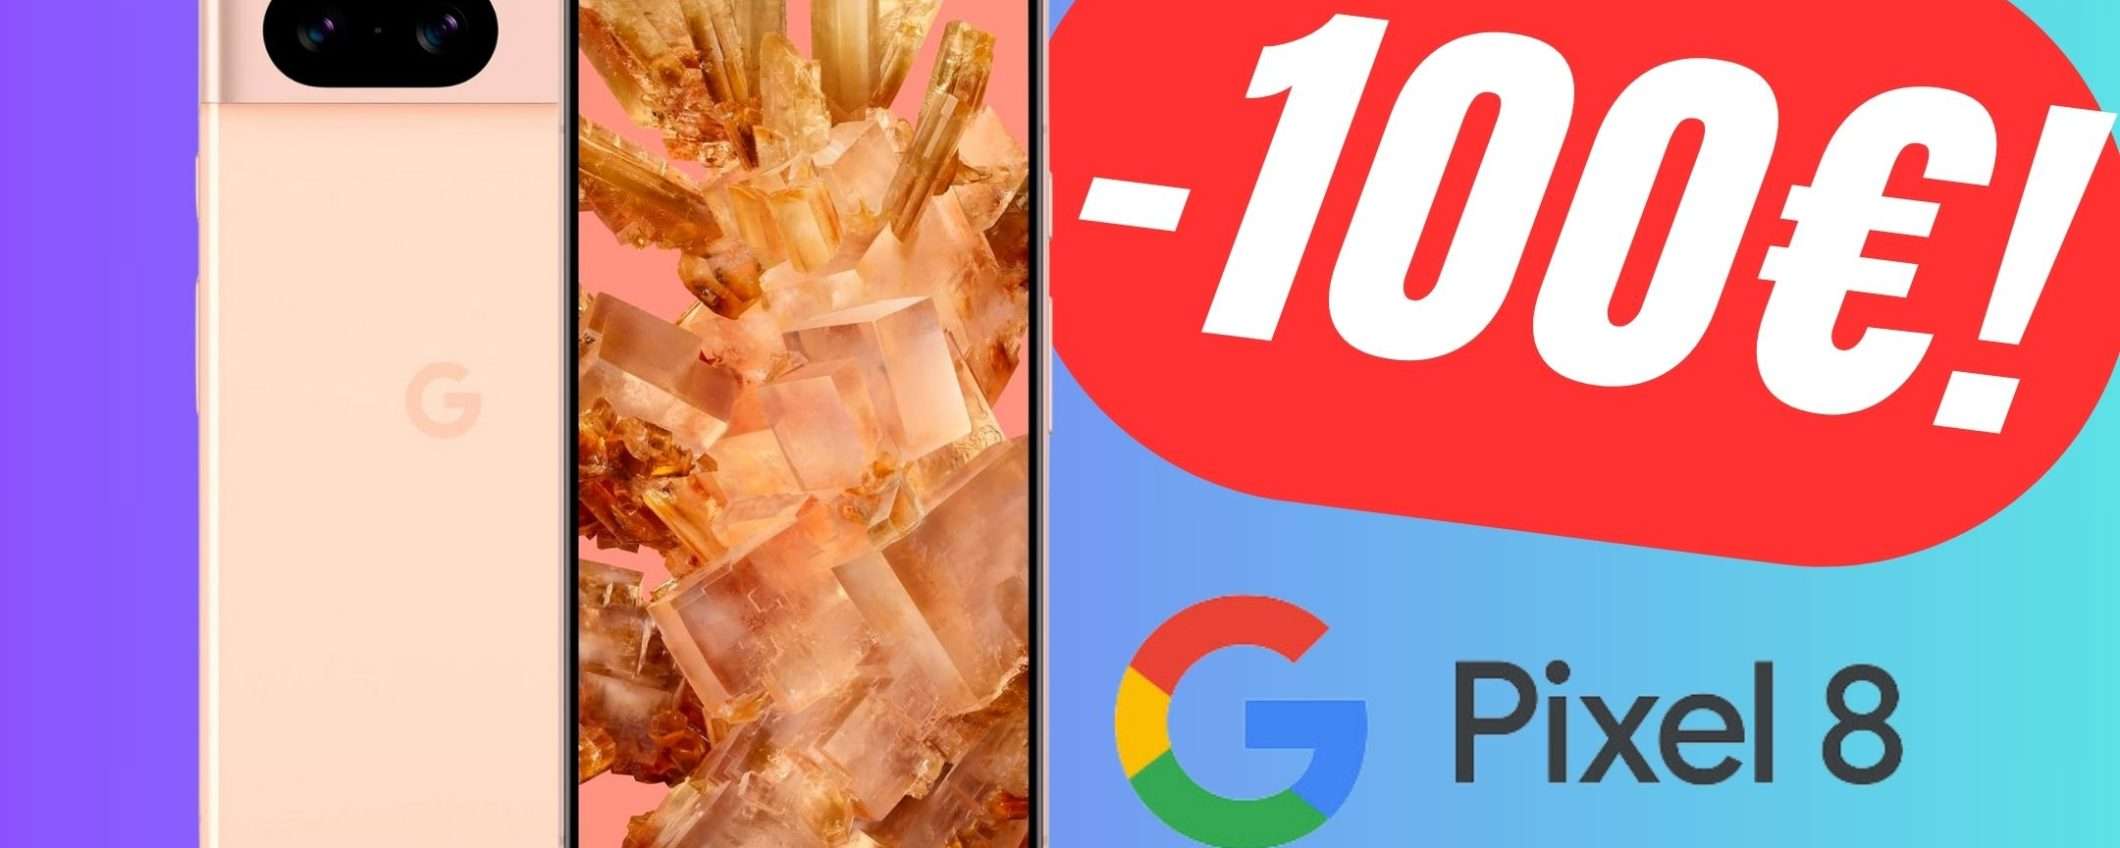 OFFERTA SHOCK: Google Pixel 8 è scontato di -100€